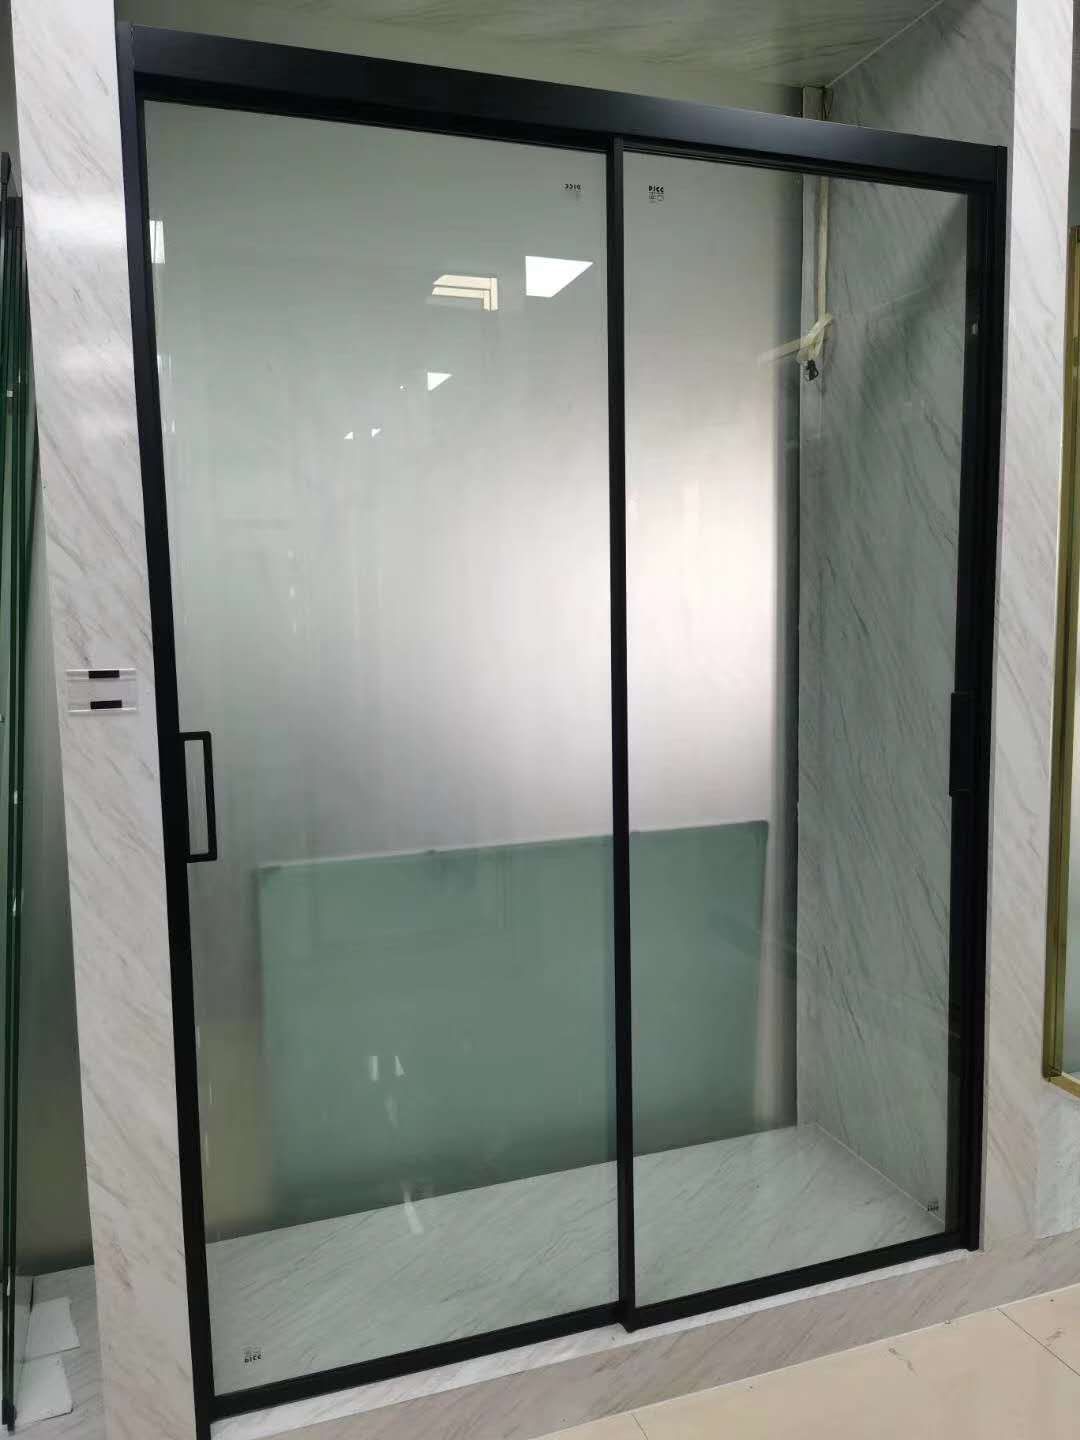 供应卫生间淋浴玻璃隔断安装 卫生间淋浴玻璃隔断报价 卫生间淋浴玻璃隔断品牌